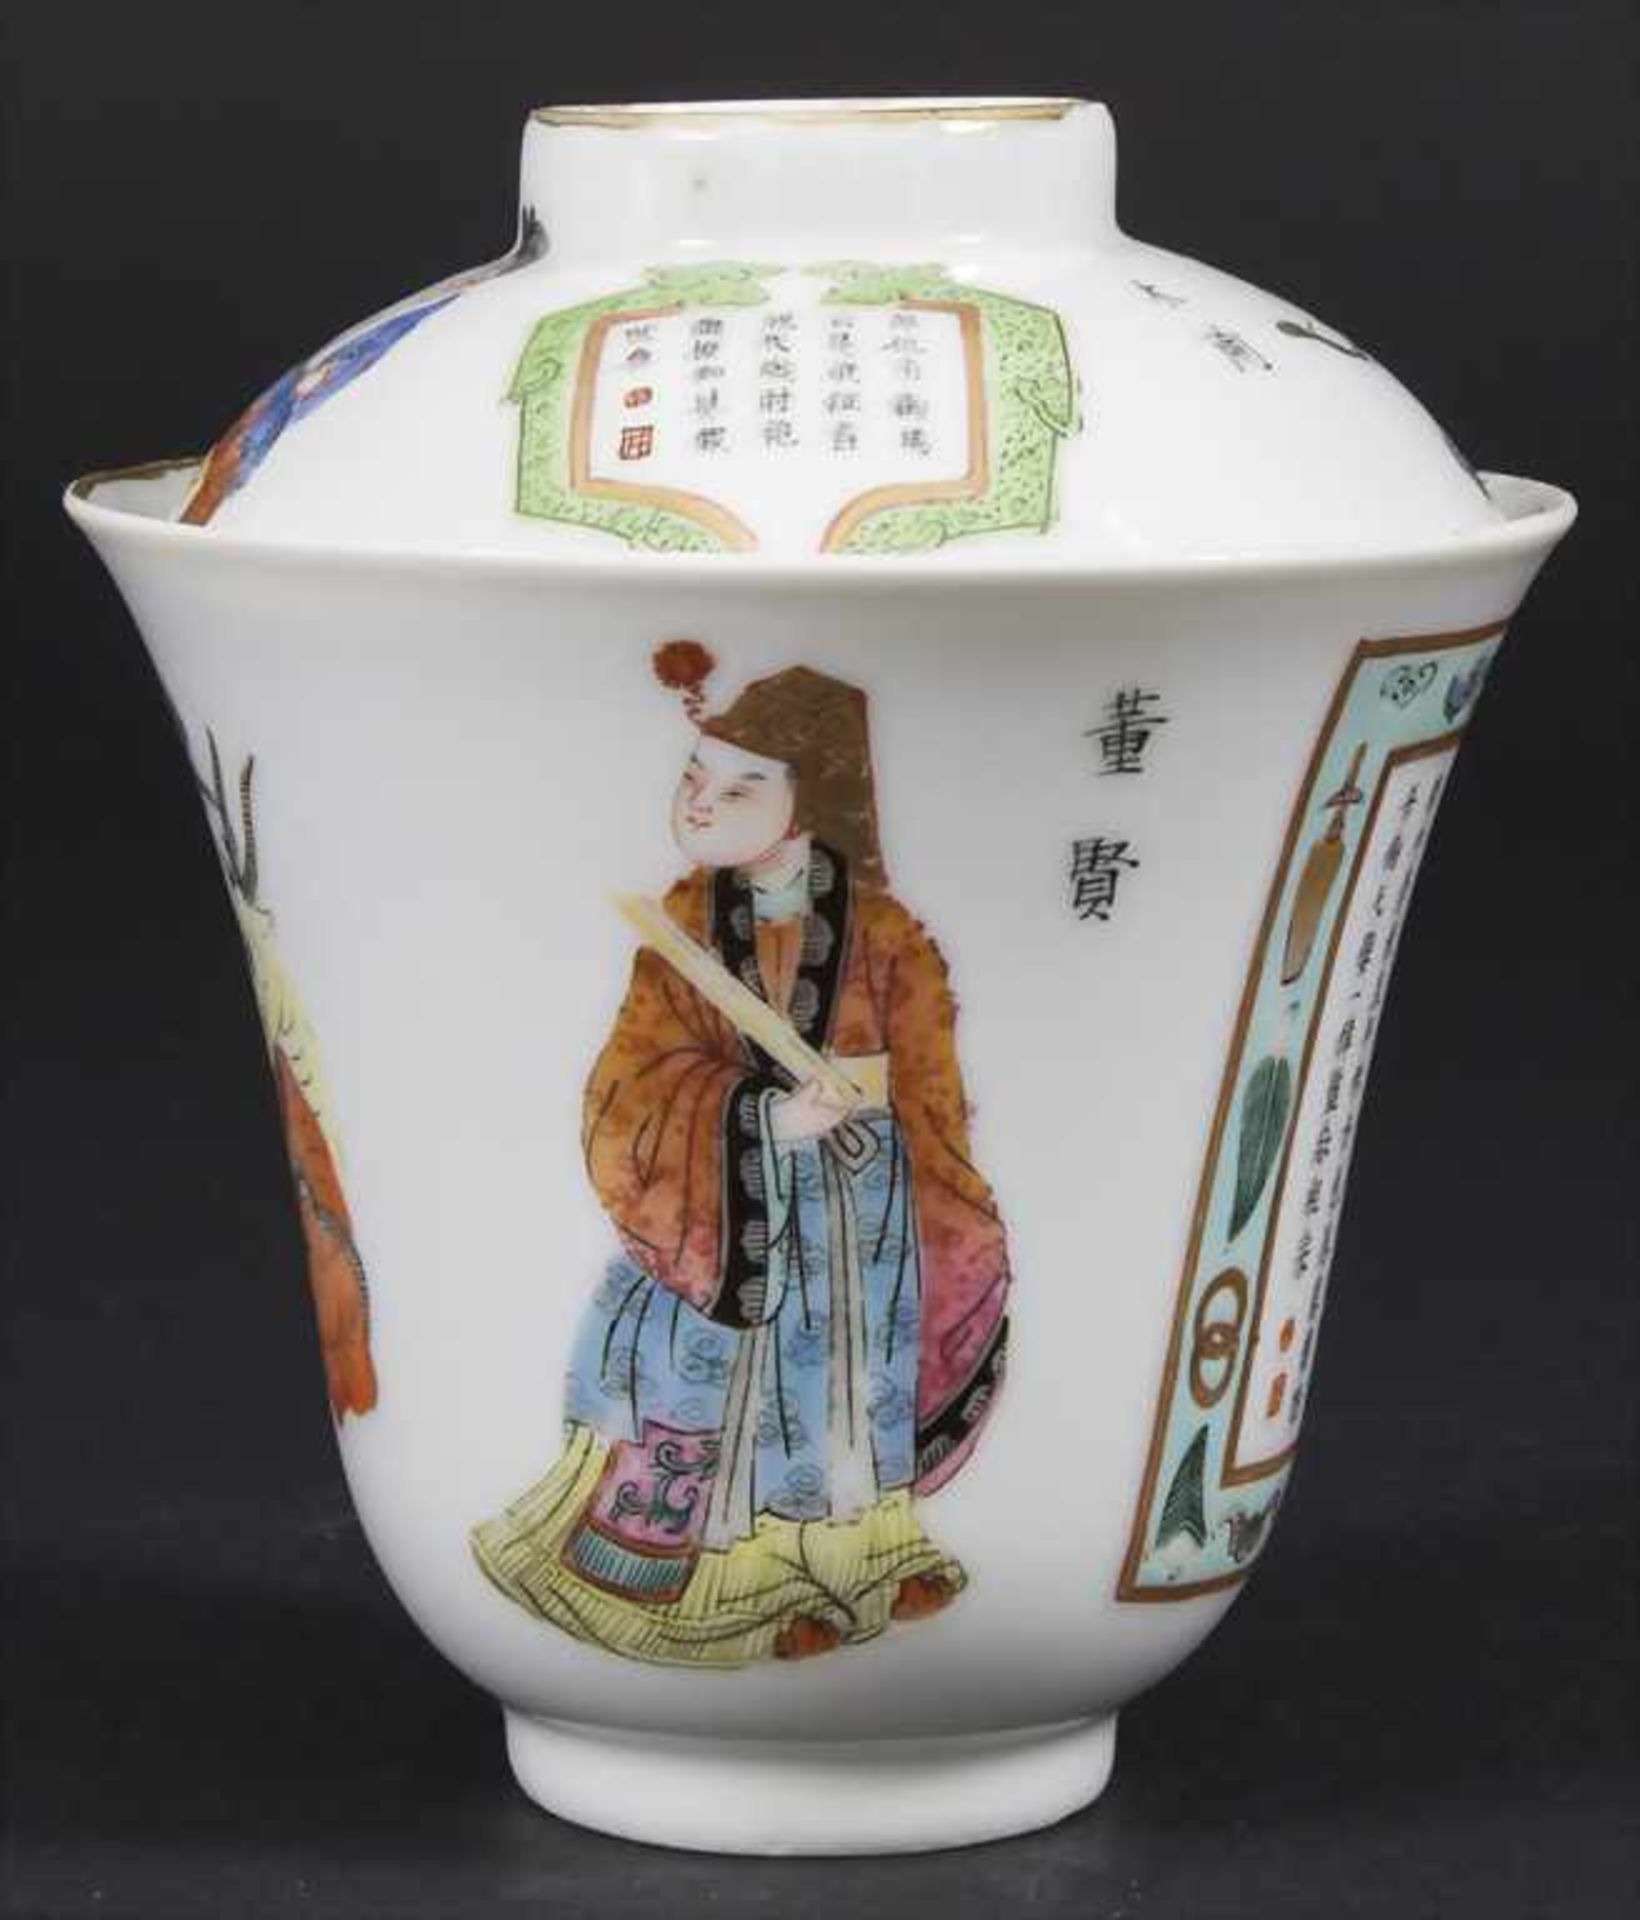 Porzellan-Deckelkumme / A porcelain lidded bowl, China, Qing-Dynastie (1644-1911), 18./19. Jh.